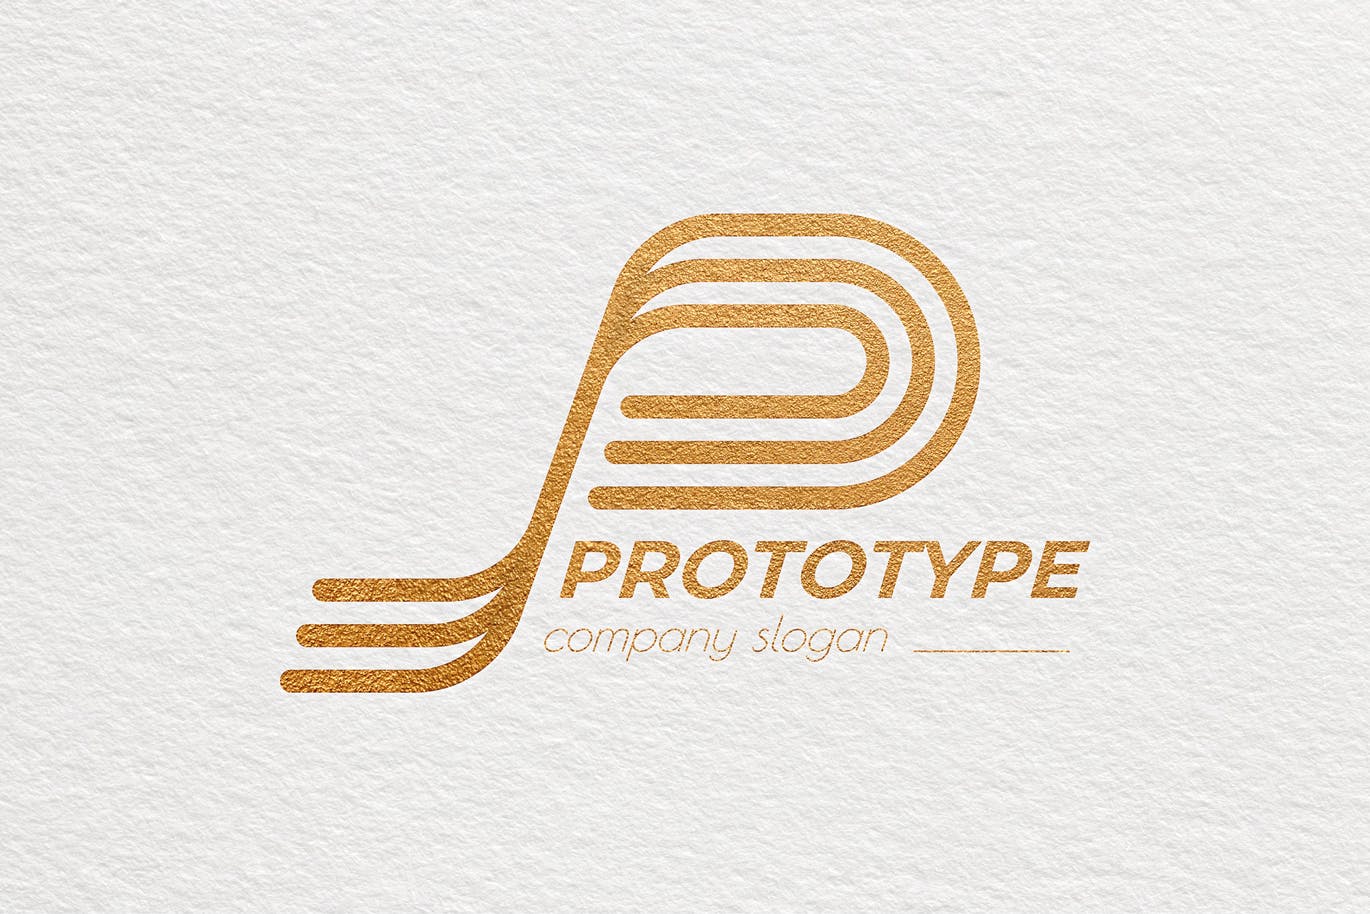 原型设计主题创意图形Logo设计蚂蚁素材精选模板 Prototype Creative Logo Template插图(3)